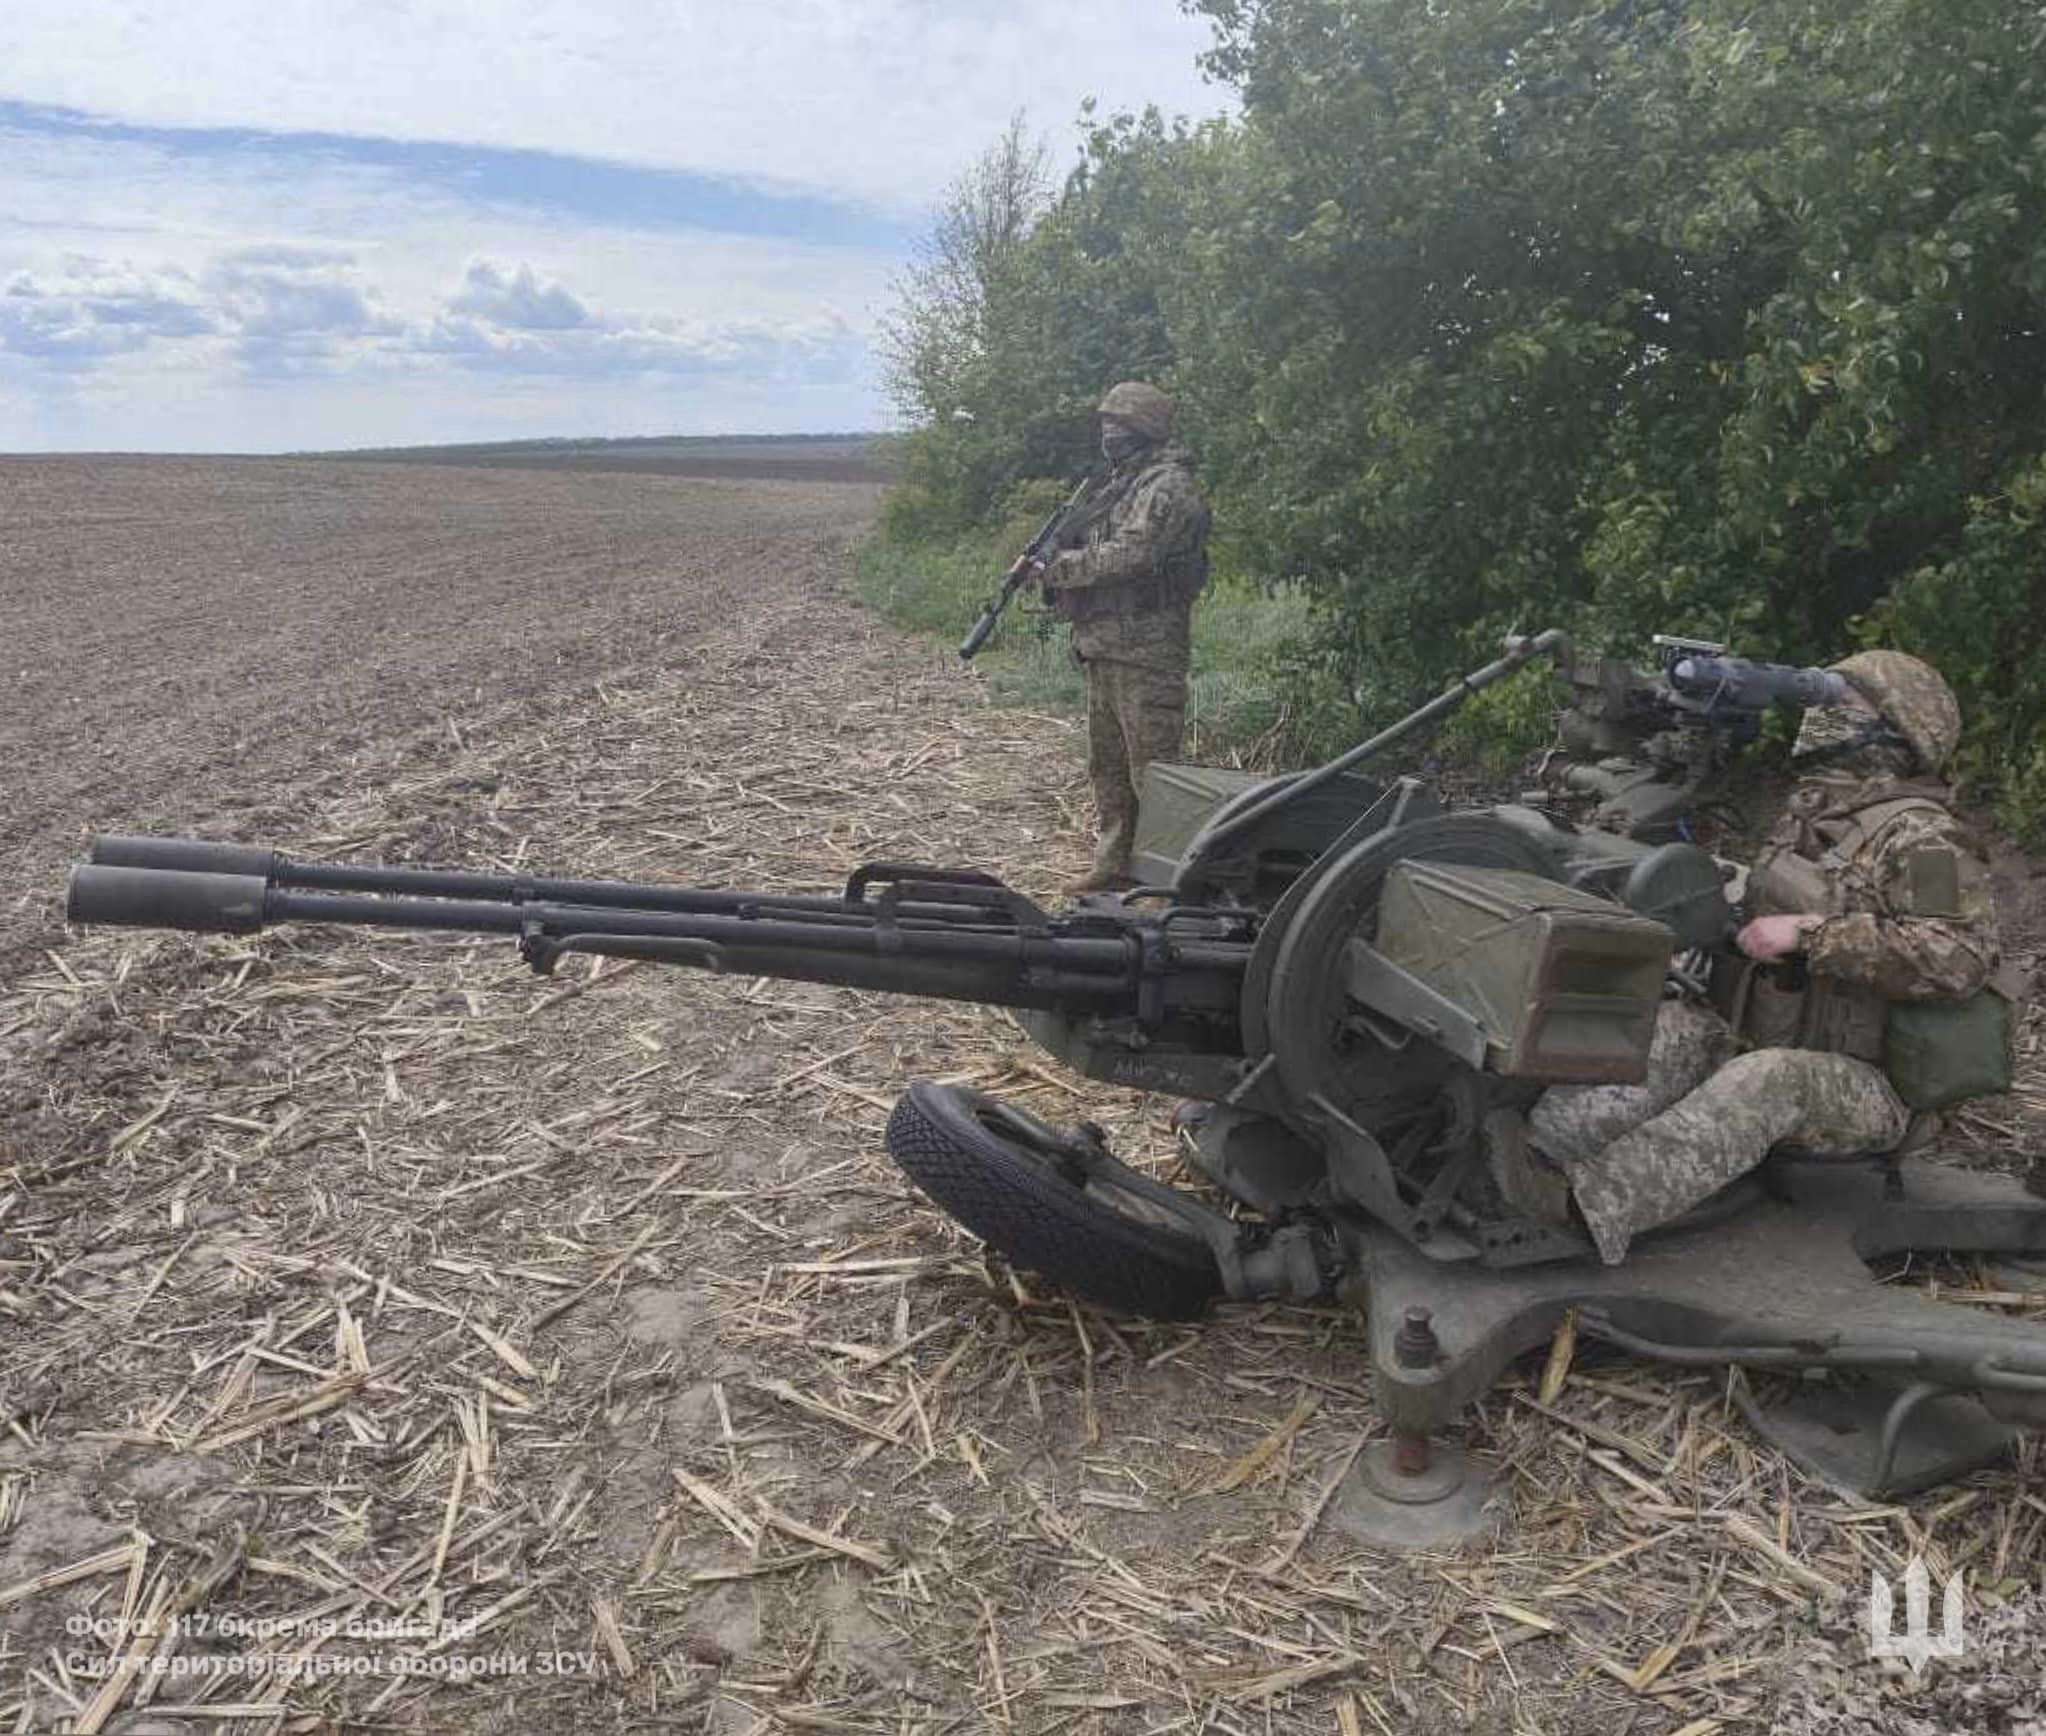 صور الجيش الاوكراني في الحرب الروسية-الاوكرانية.........متجدد - صفحة 2 GOpf2SIXUAAKMW-?format=jpg&name=large